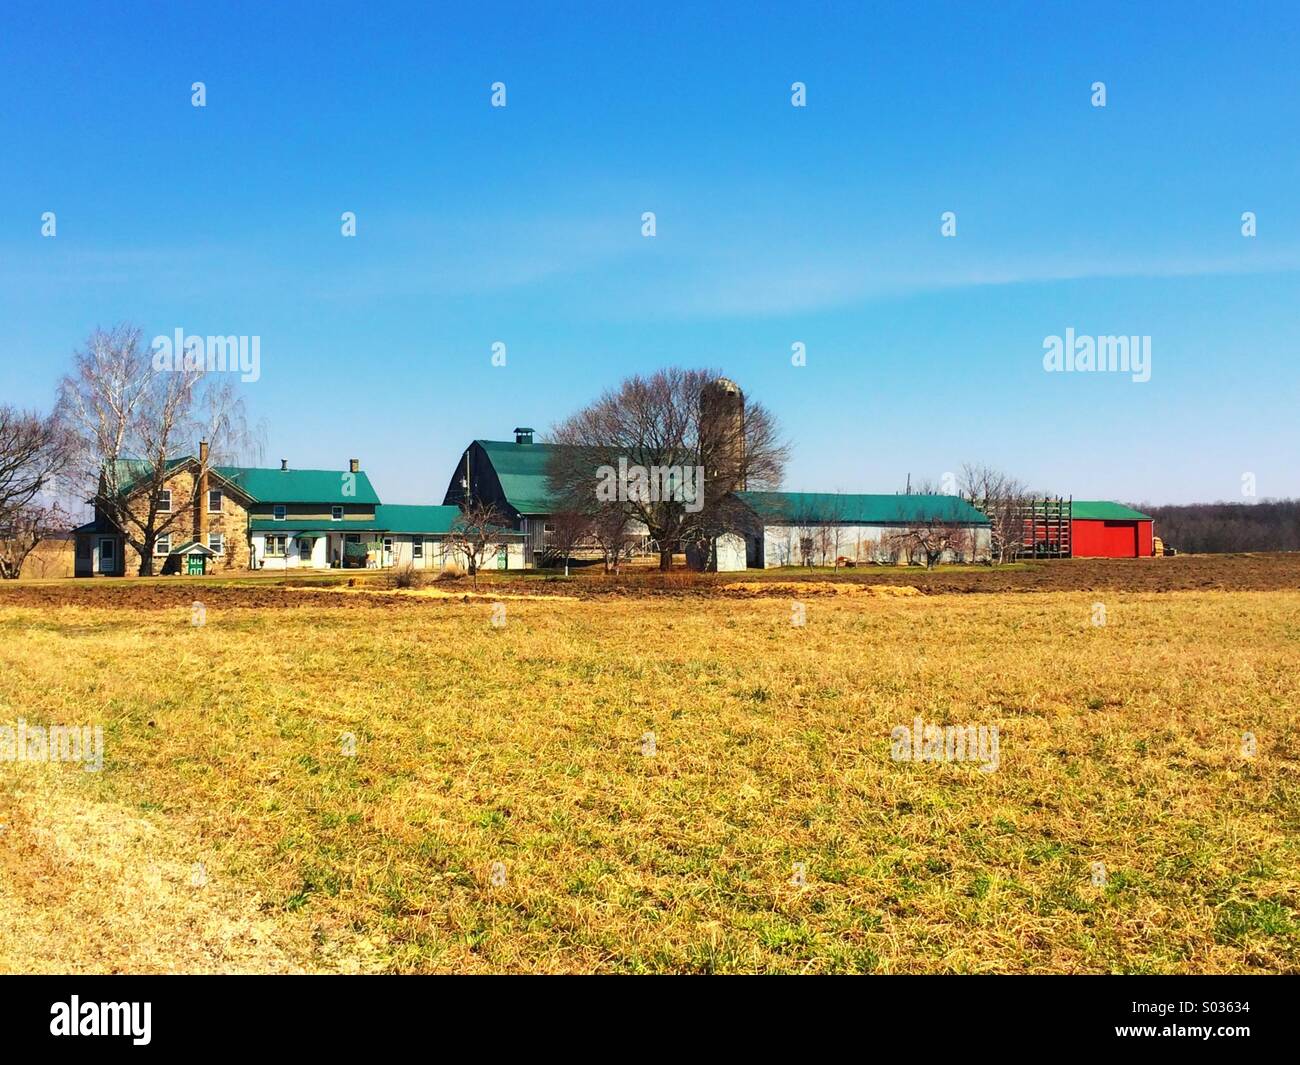 Mennonite Farm, at St. Jacobs in Kitchener Ontario Stock Photo